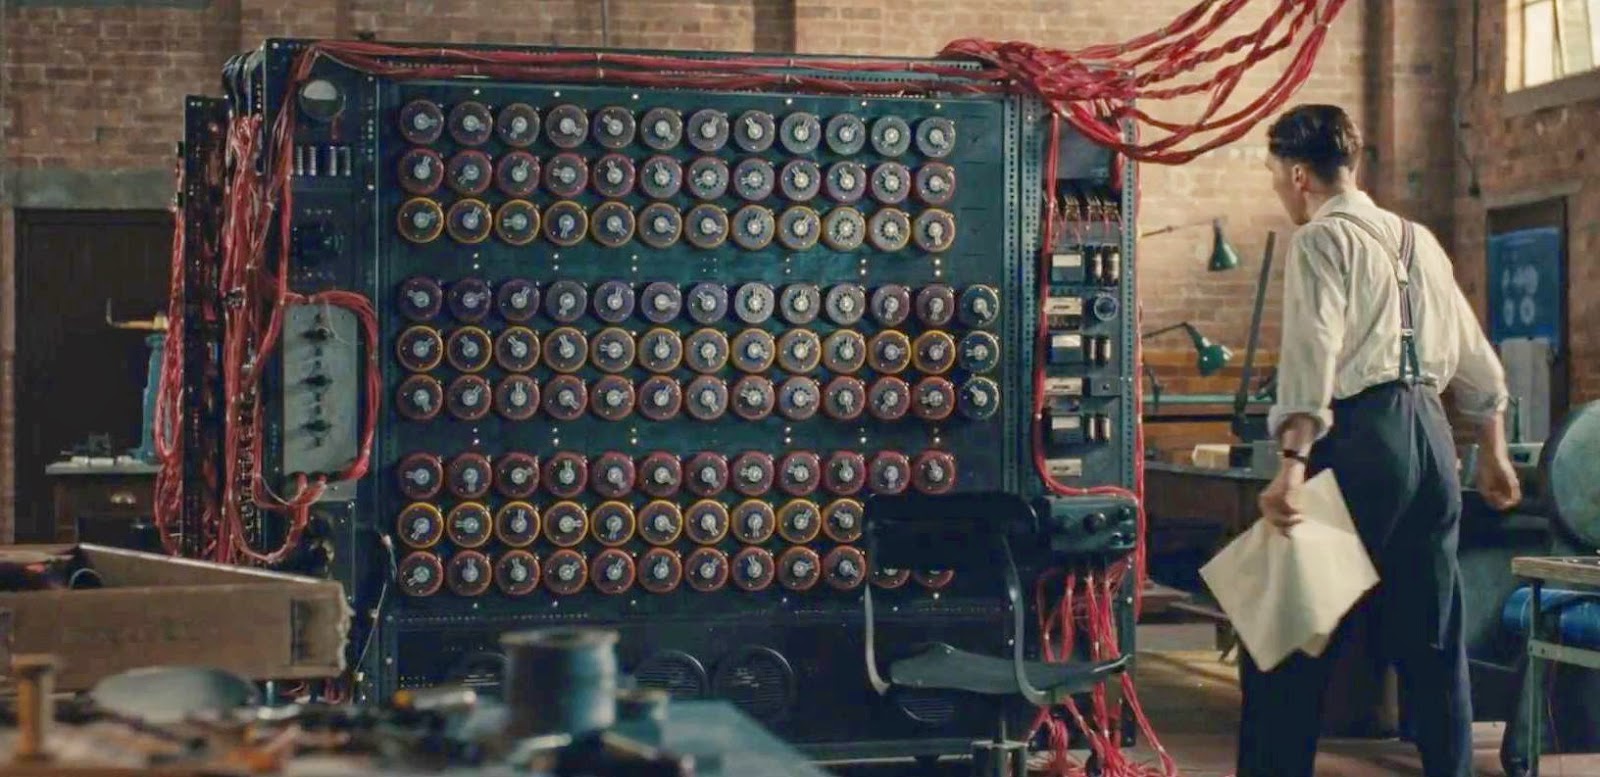 Mesin pemecah kode Enigma